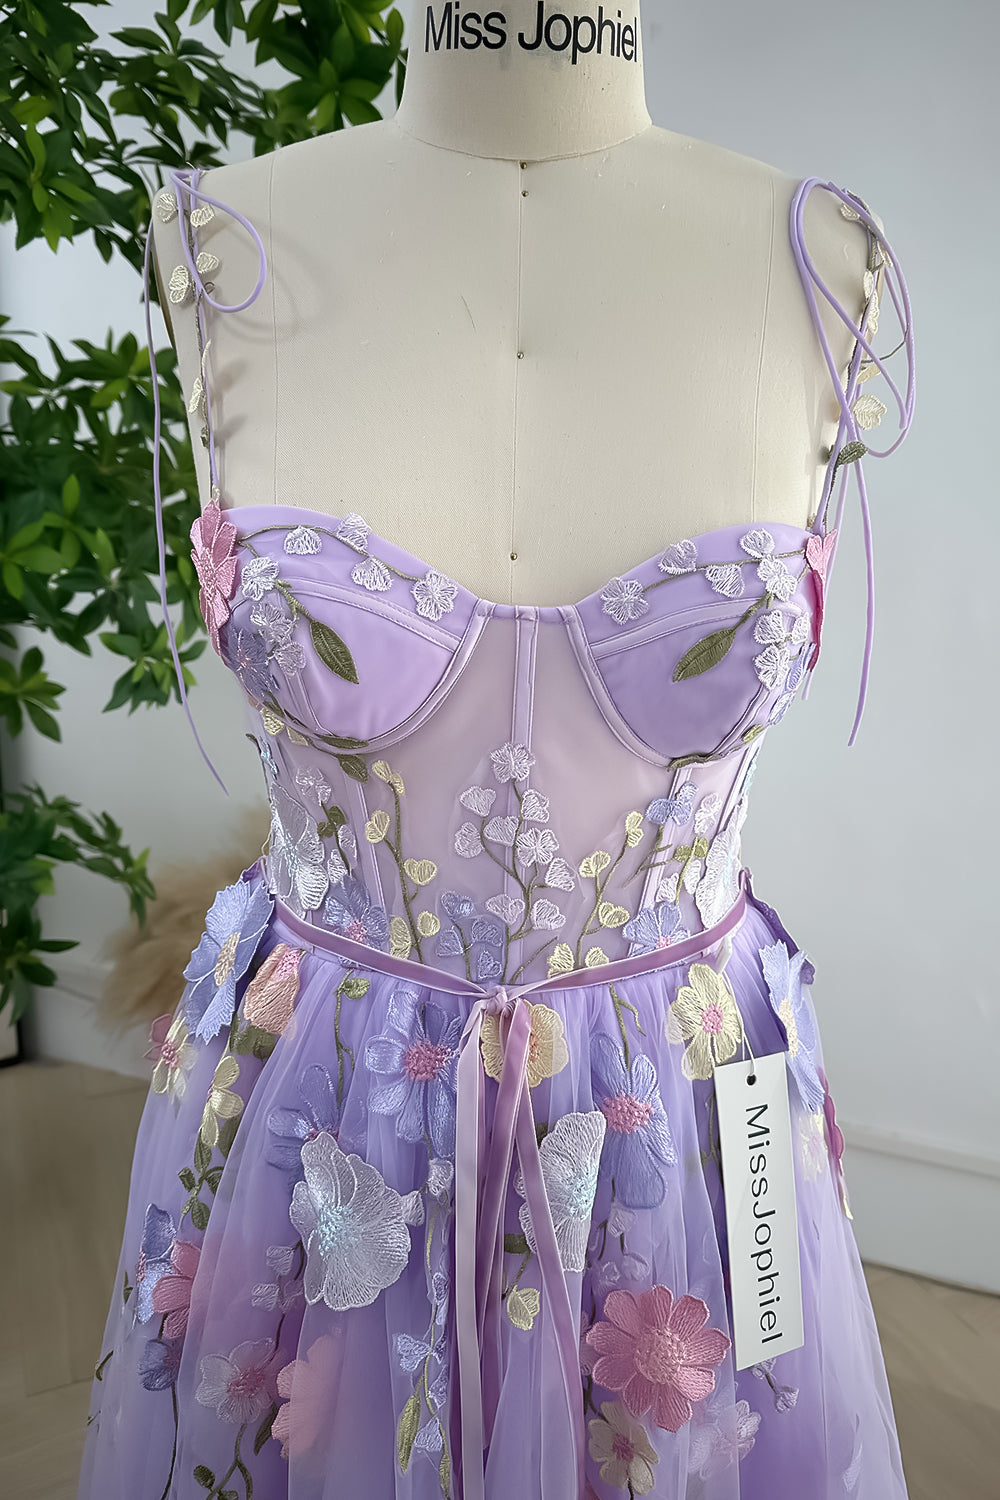 MissJophiel Embroidery Floral Corset Lavender Dress with Removable Tie Straps